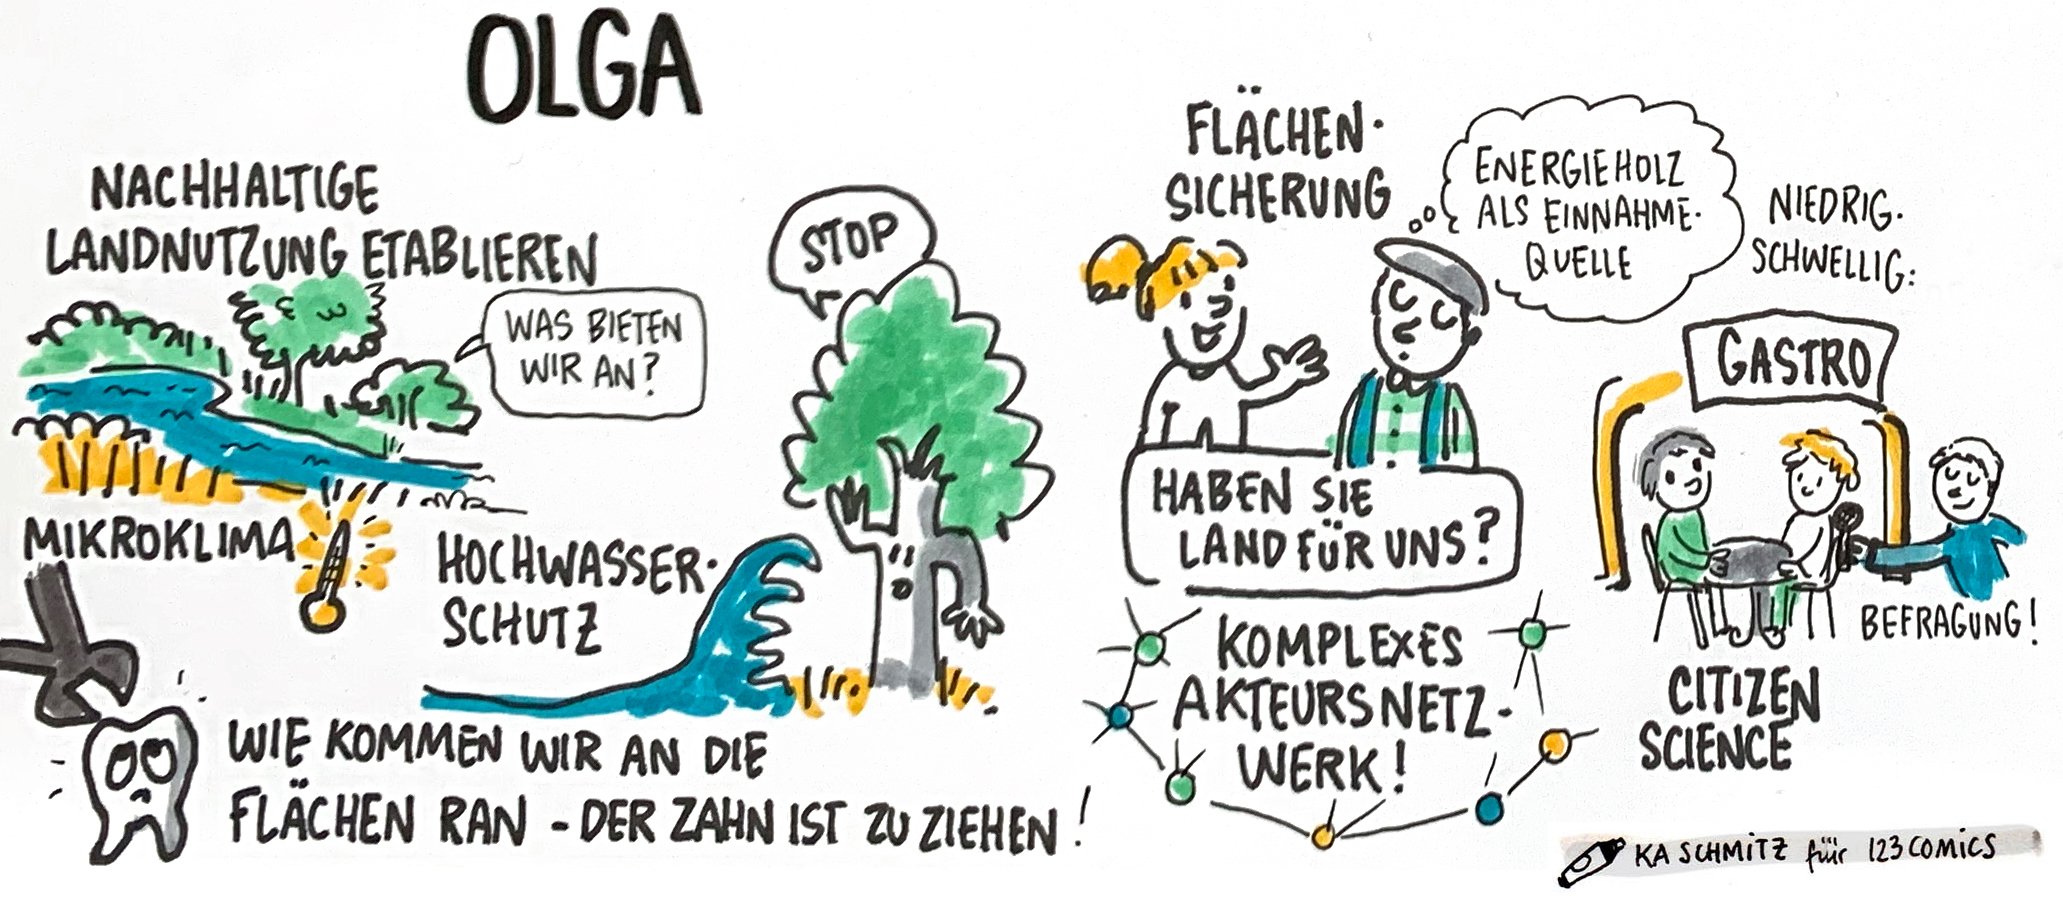 Sketch OLGA von der Statuskonferenz 2020 (Bild: 123comics)